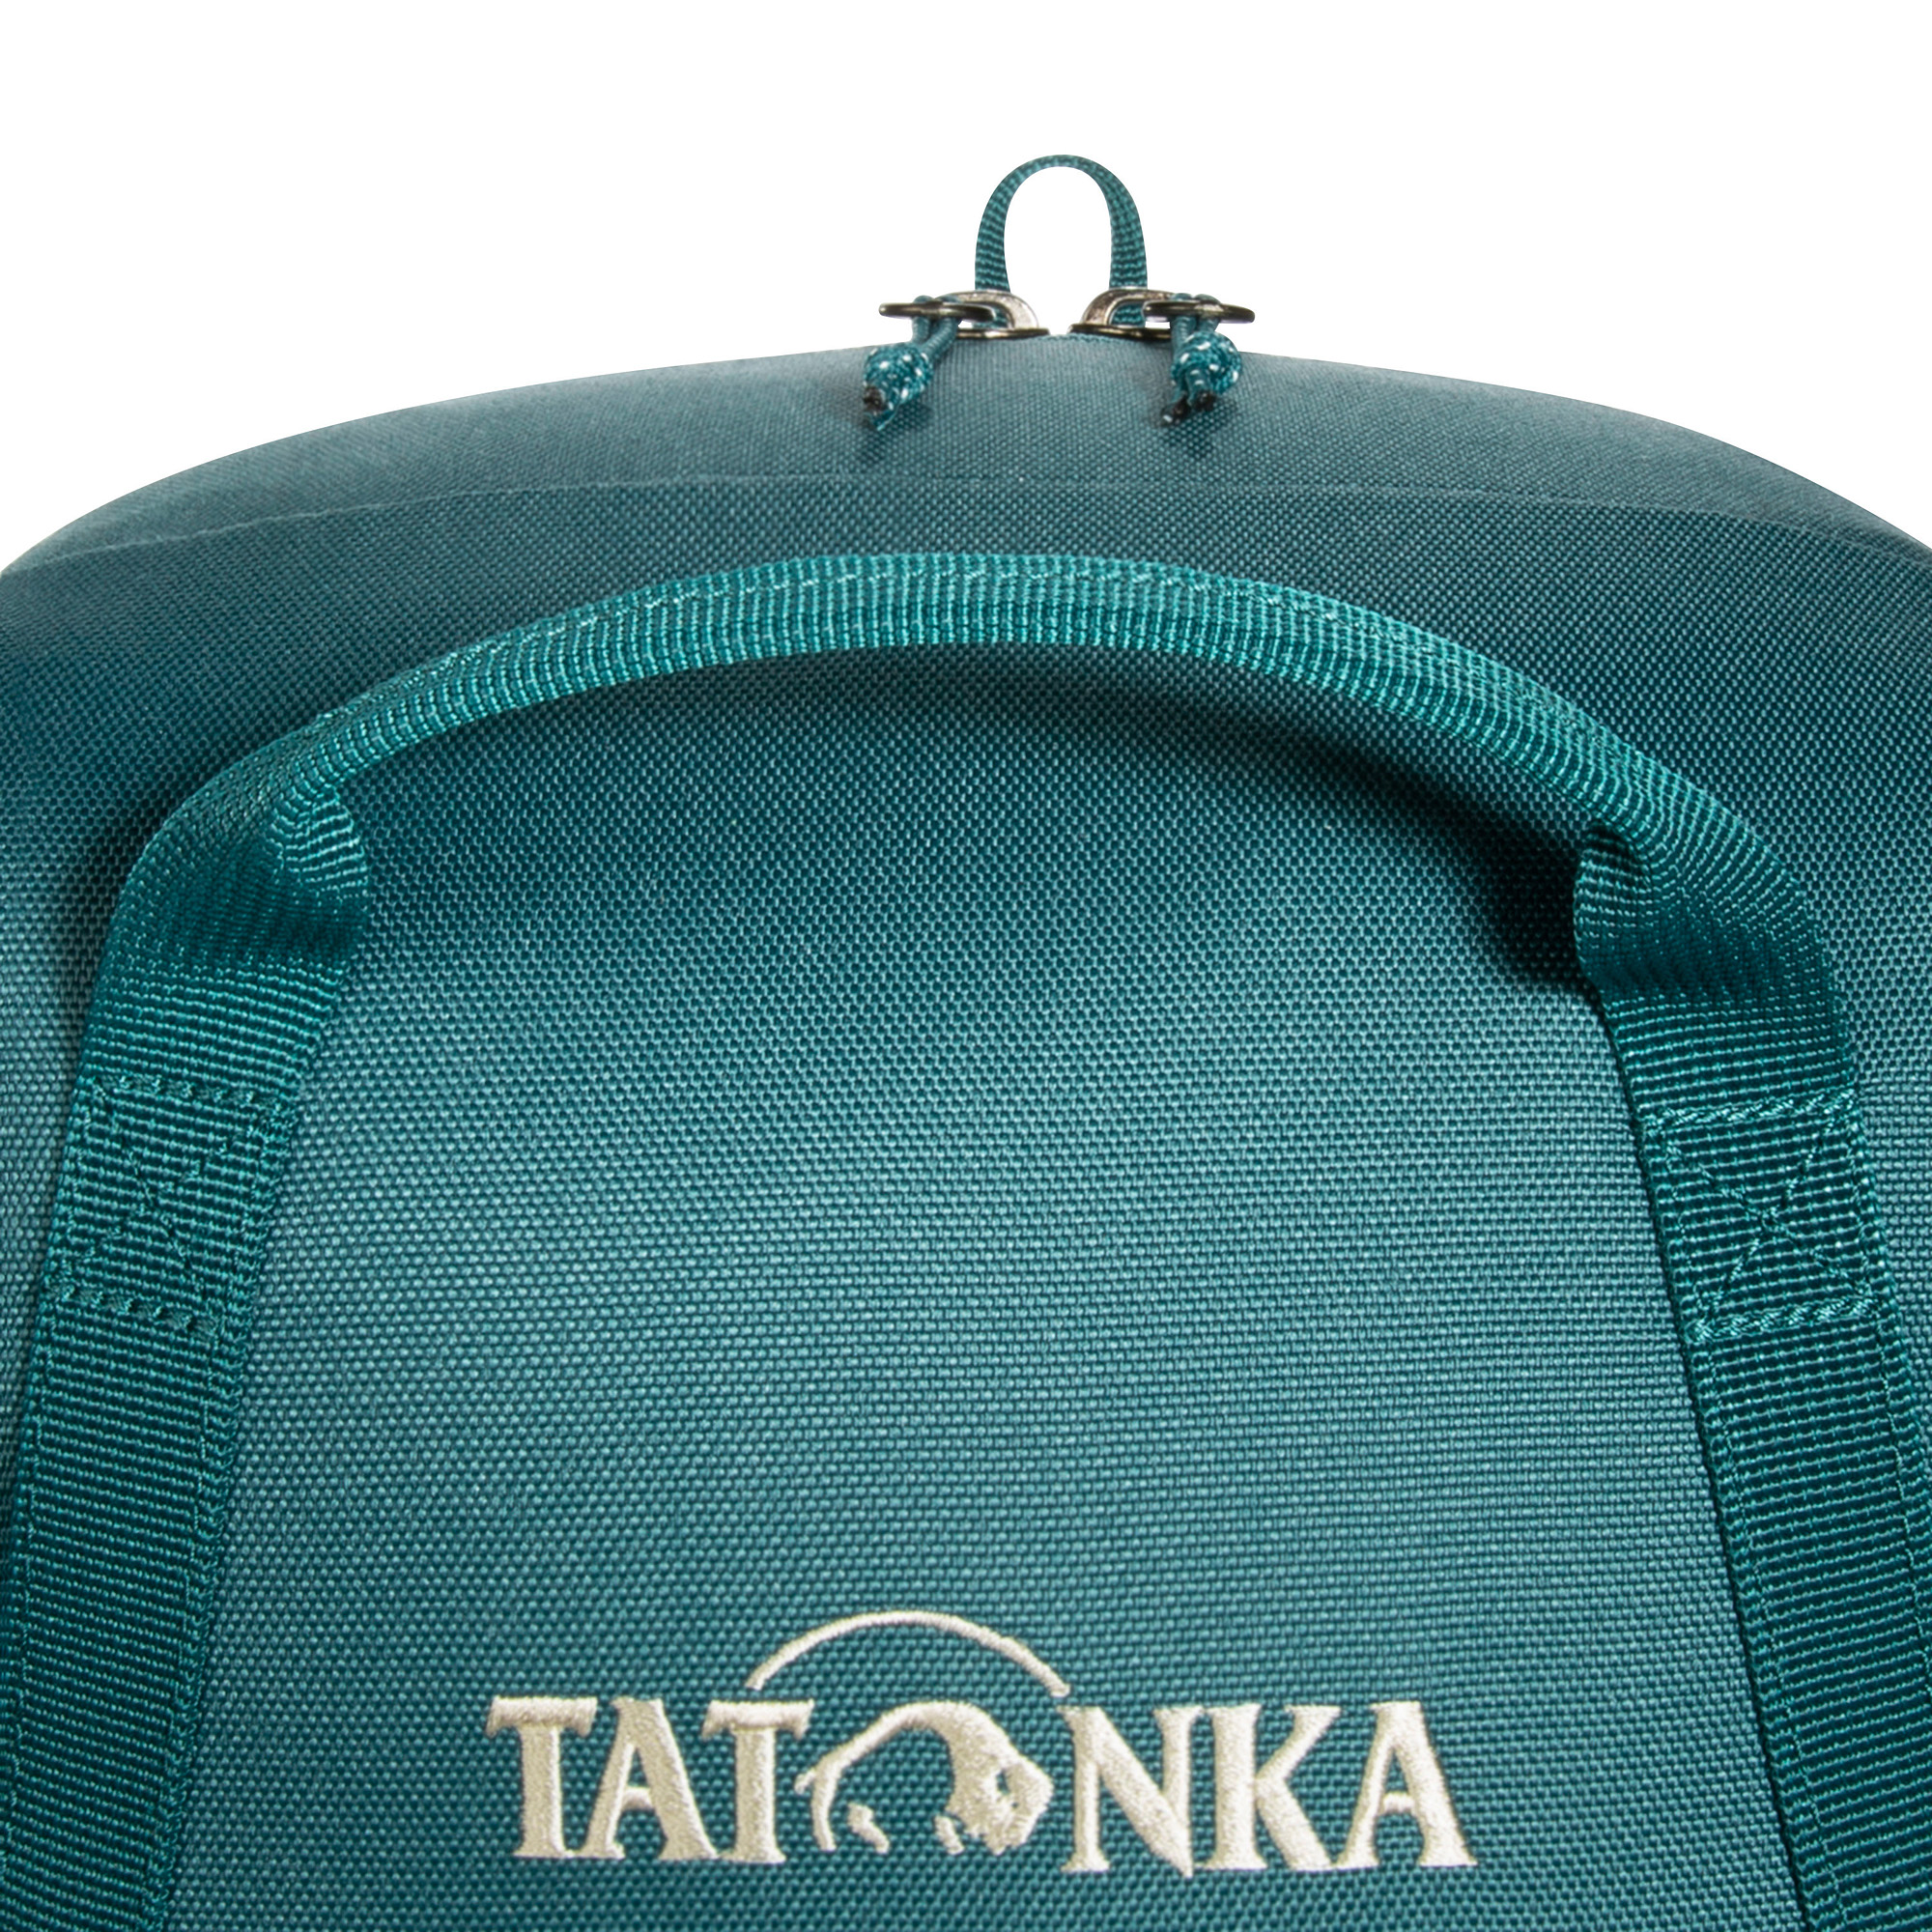 Tatonka City Pack 20 teal green / jasper grün Tagesrucksäcke 4013236383218